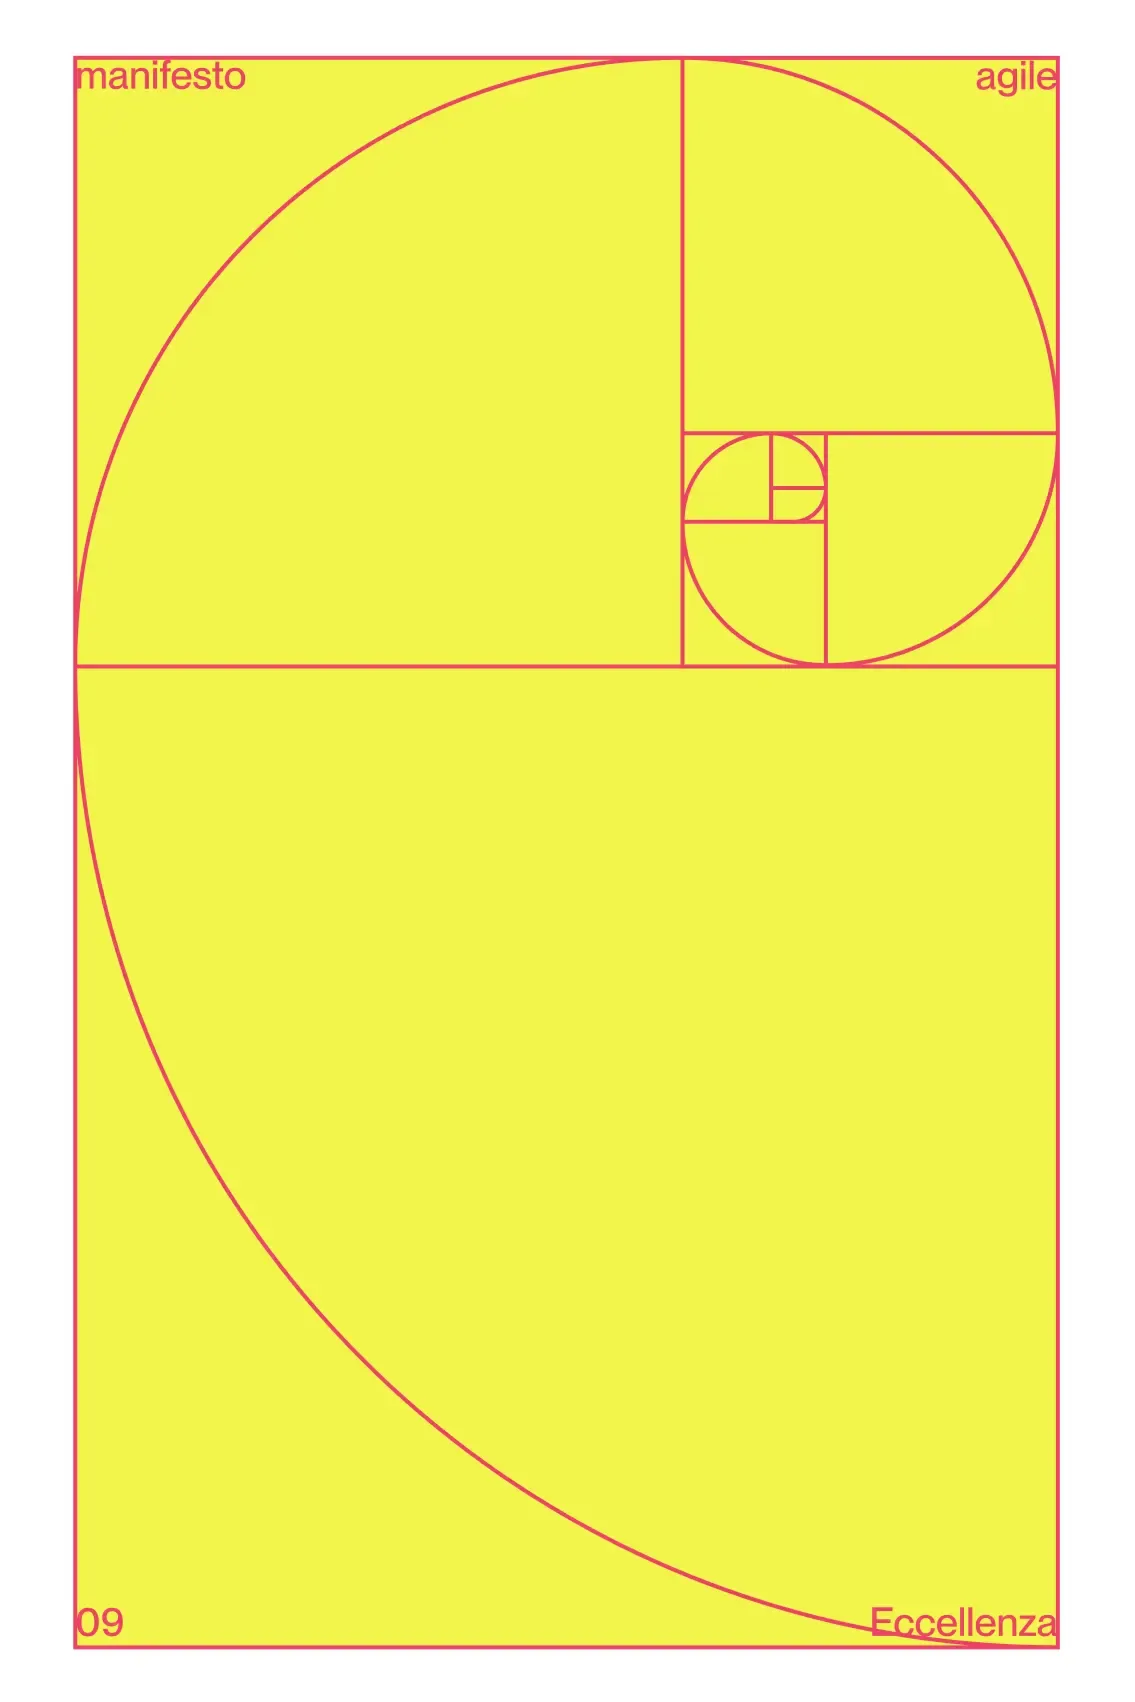 Spirale di Fibonacci che rappresenta l'eccellenza